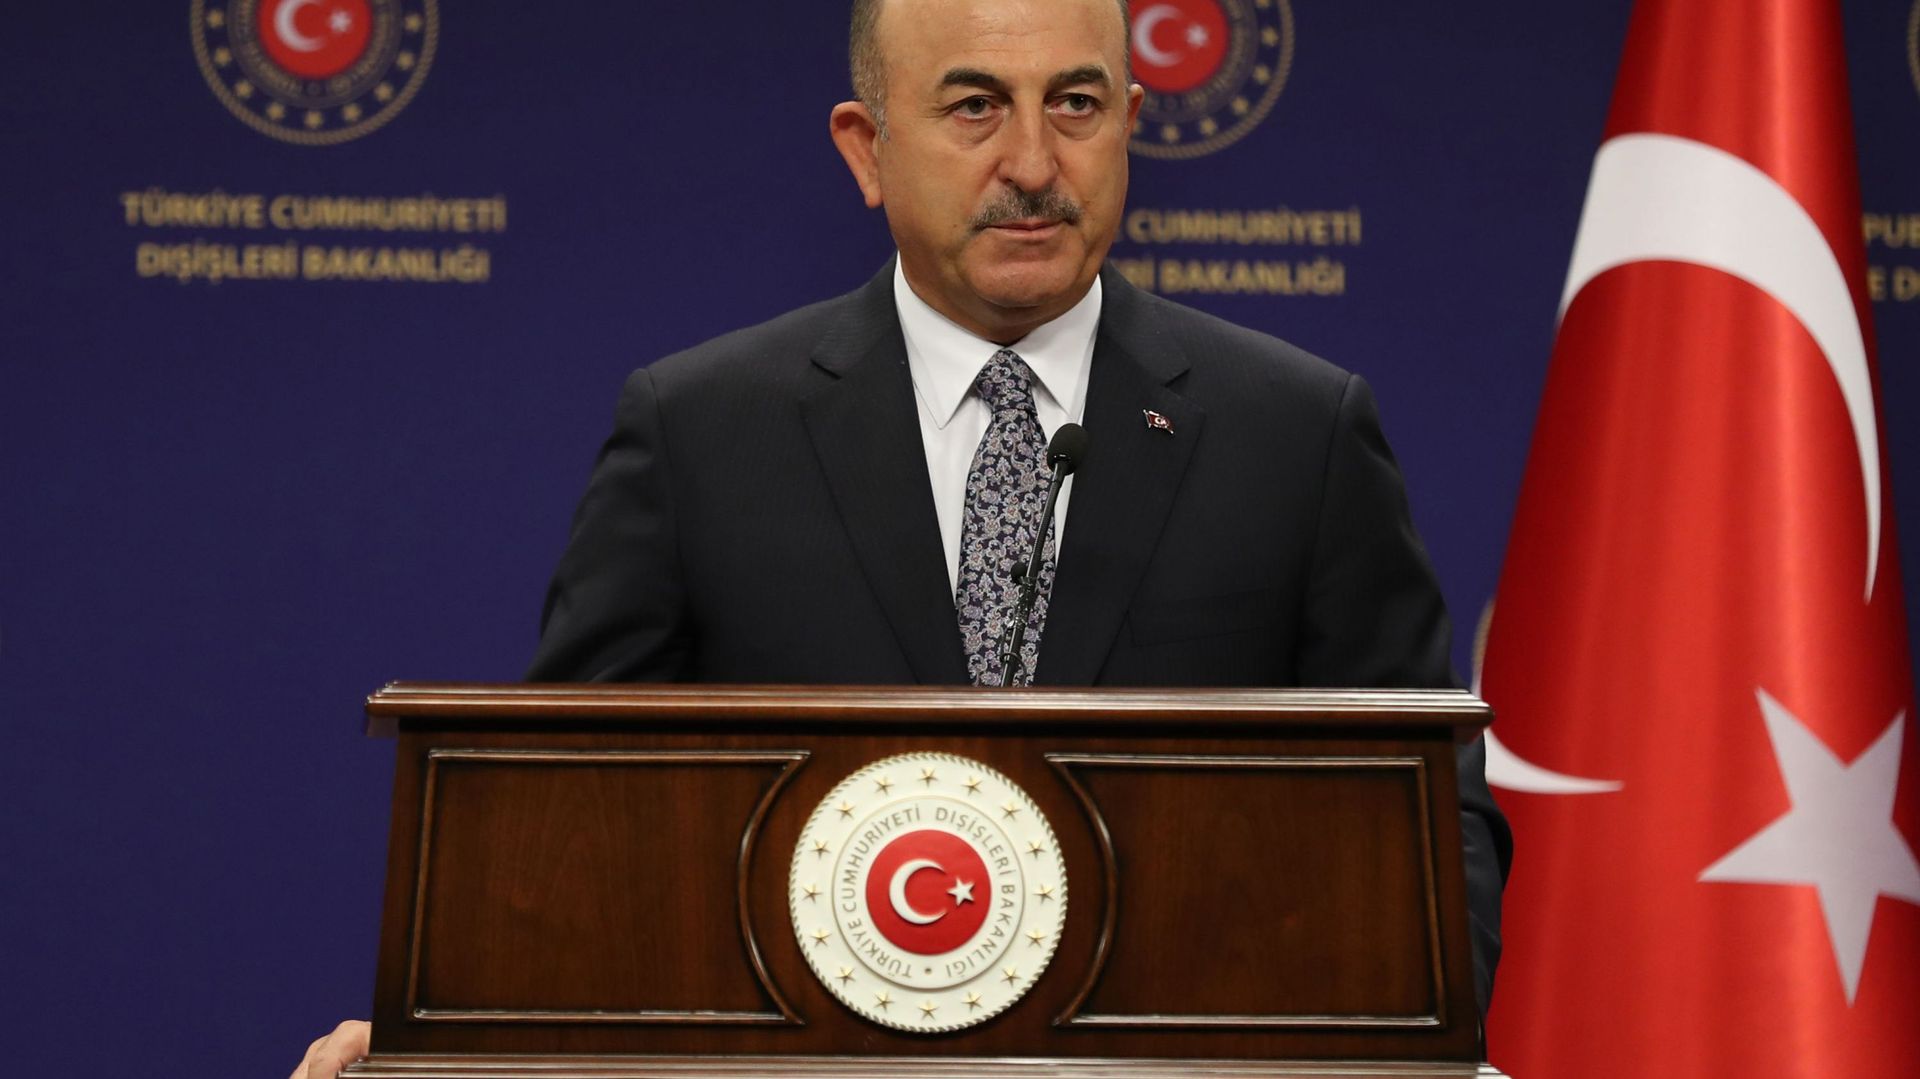 Le ministre turc des affaires étrangères Mevlut Cavusoglu s'exprime lors d'une conférence de presse à Ankara le 3 novembre 2020.